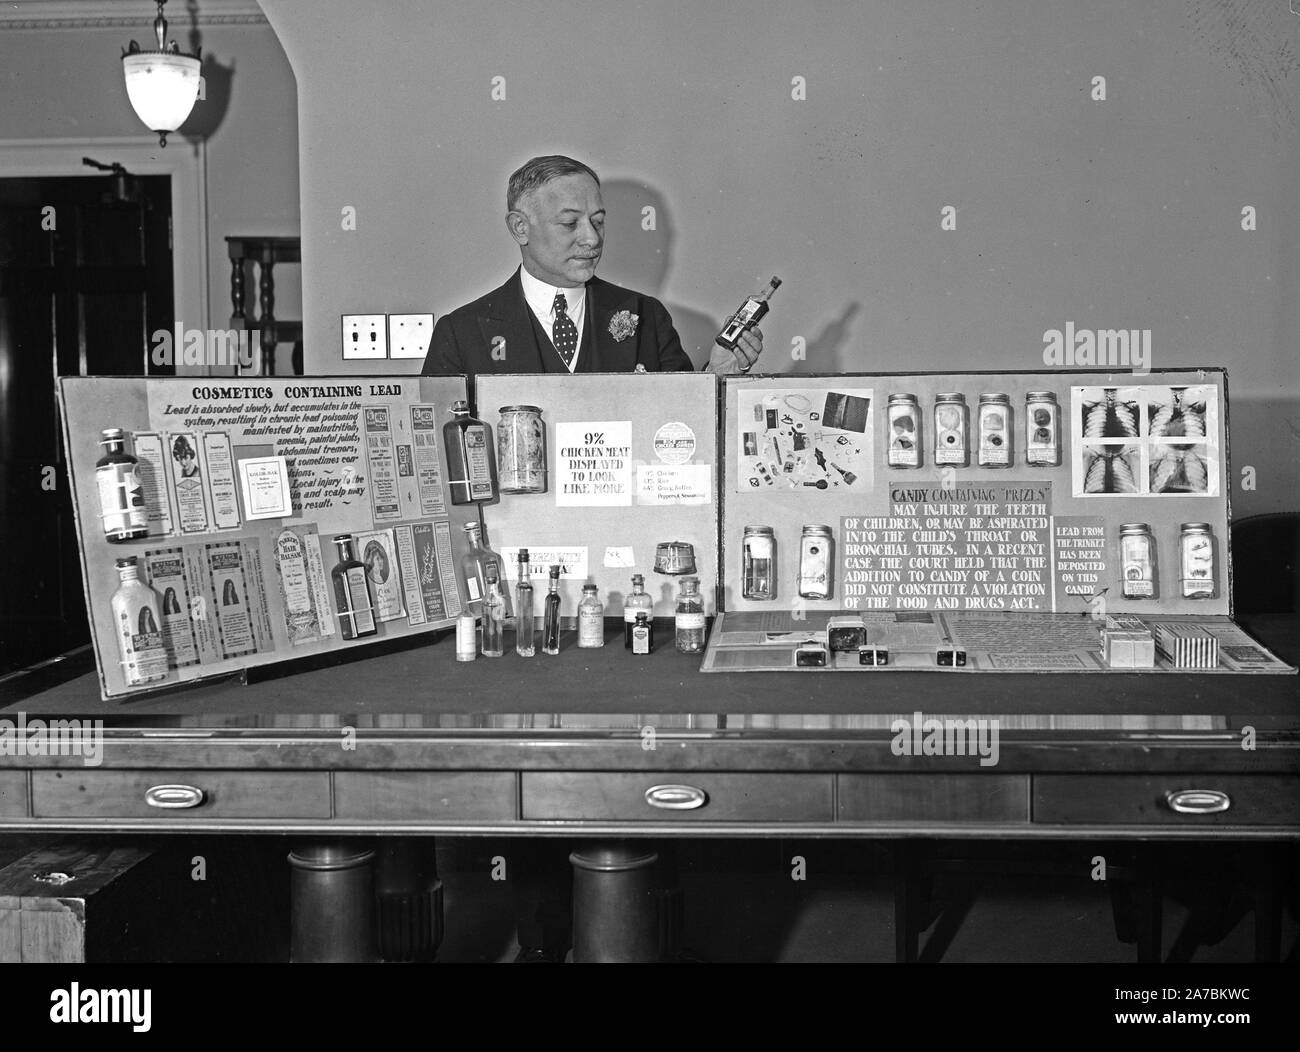 Hombre de pie detrás de la pantalla mostrando diversos productos cosméticos que contienen plomo ca. 1934 Foto de stock